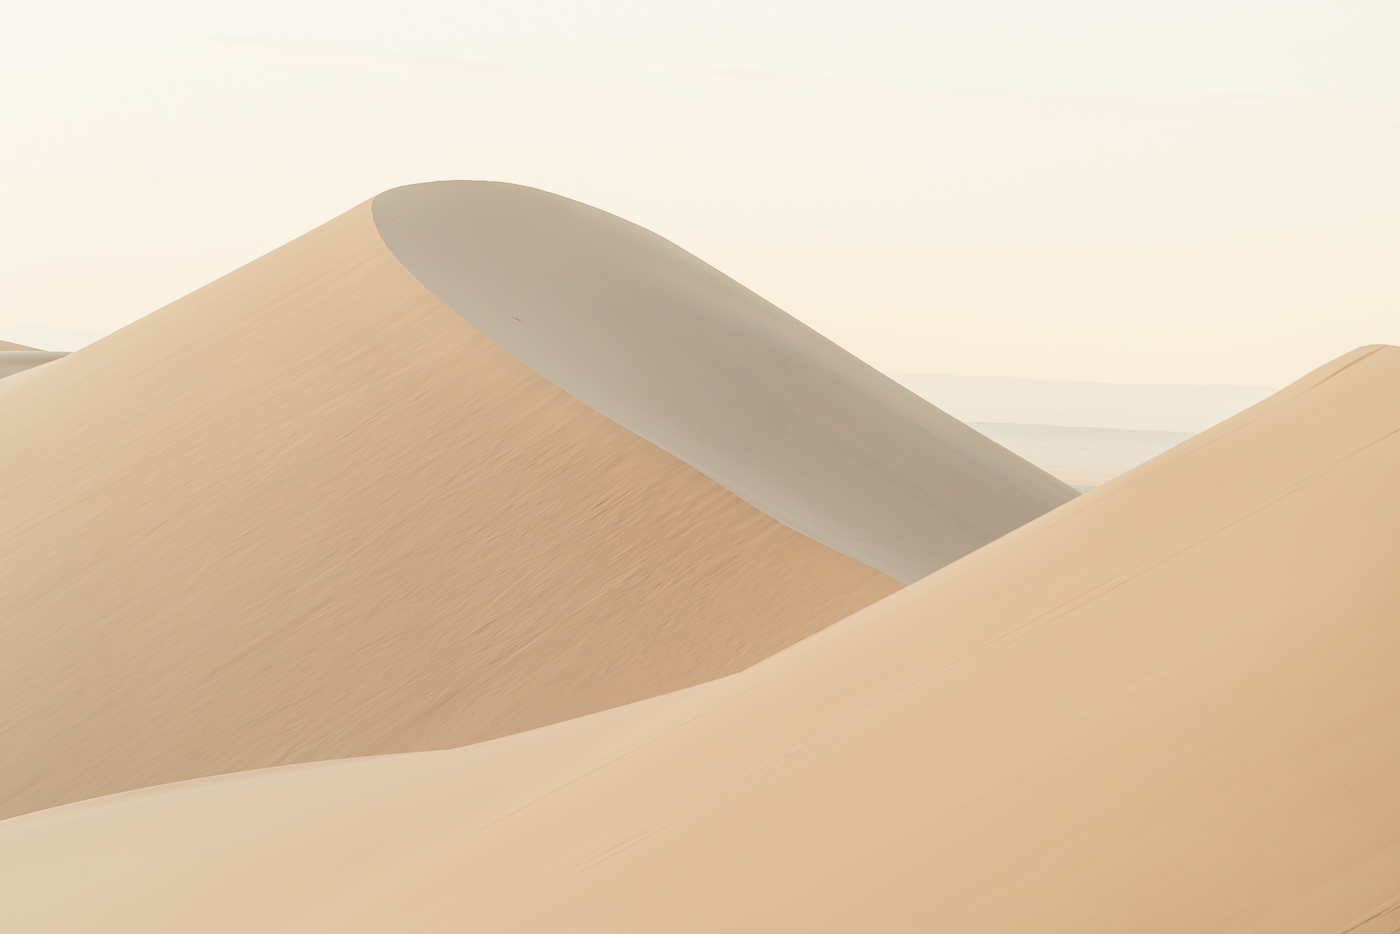 Sand dunes of Mongolia of the Gobi desert